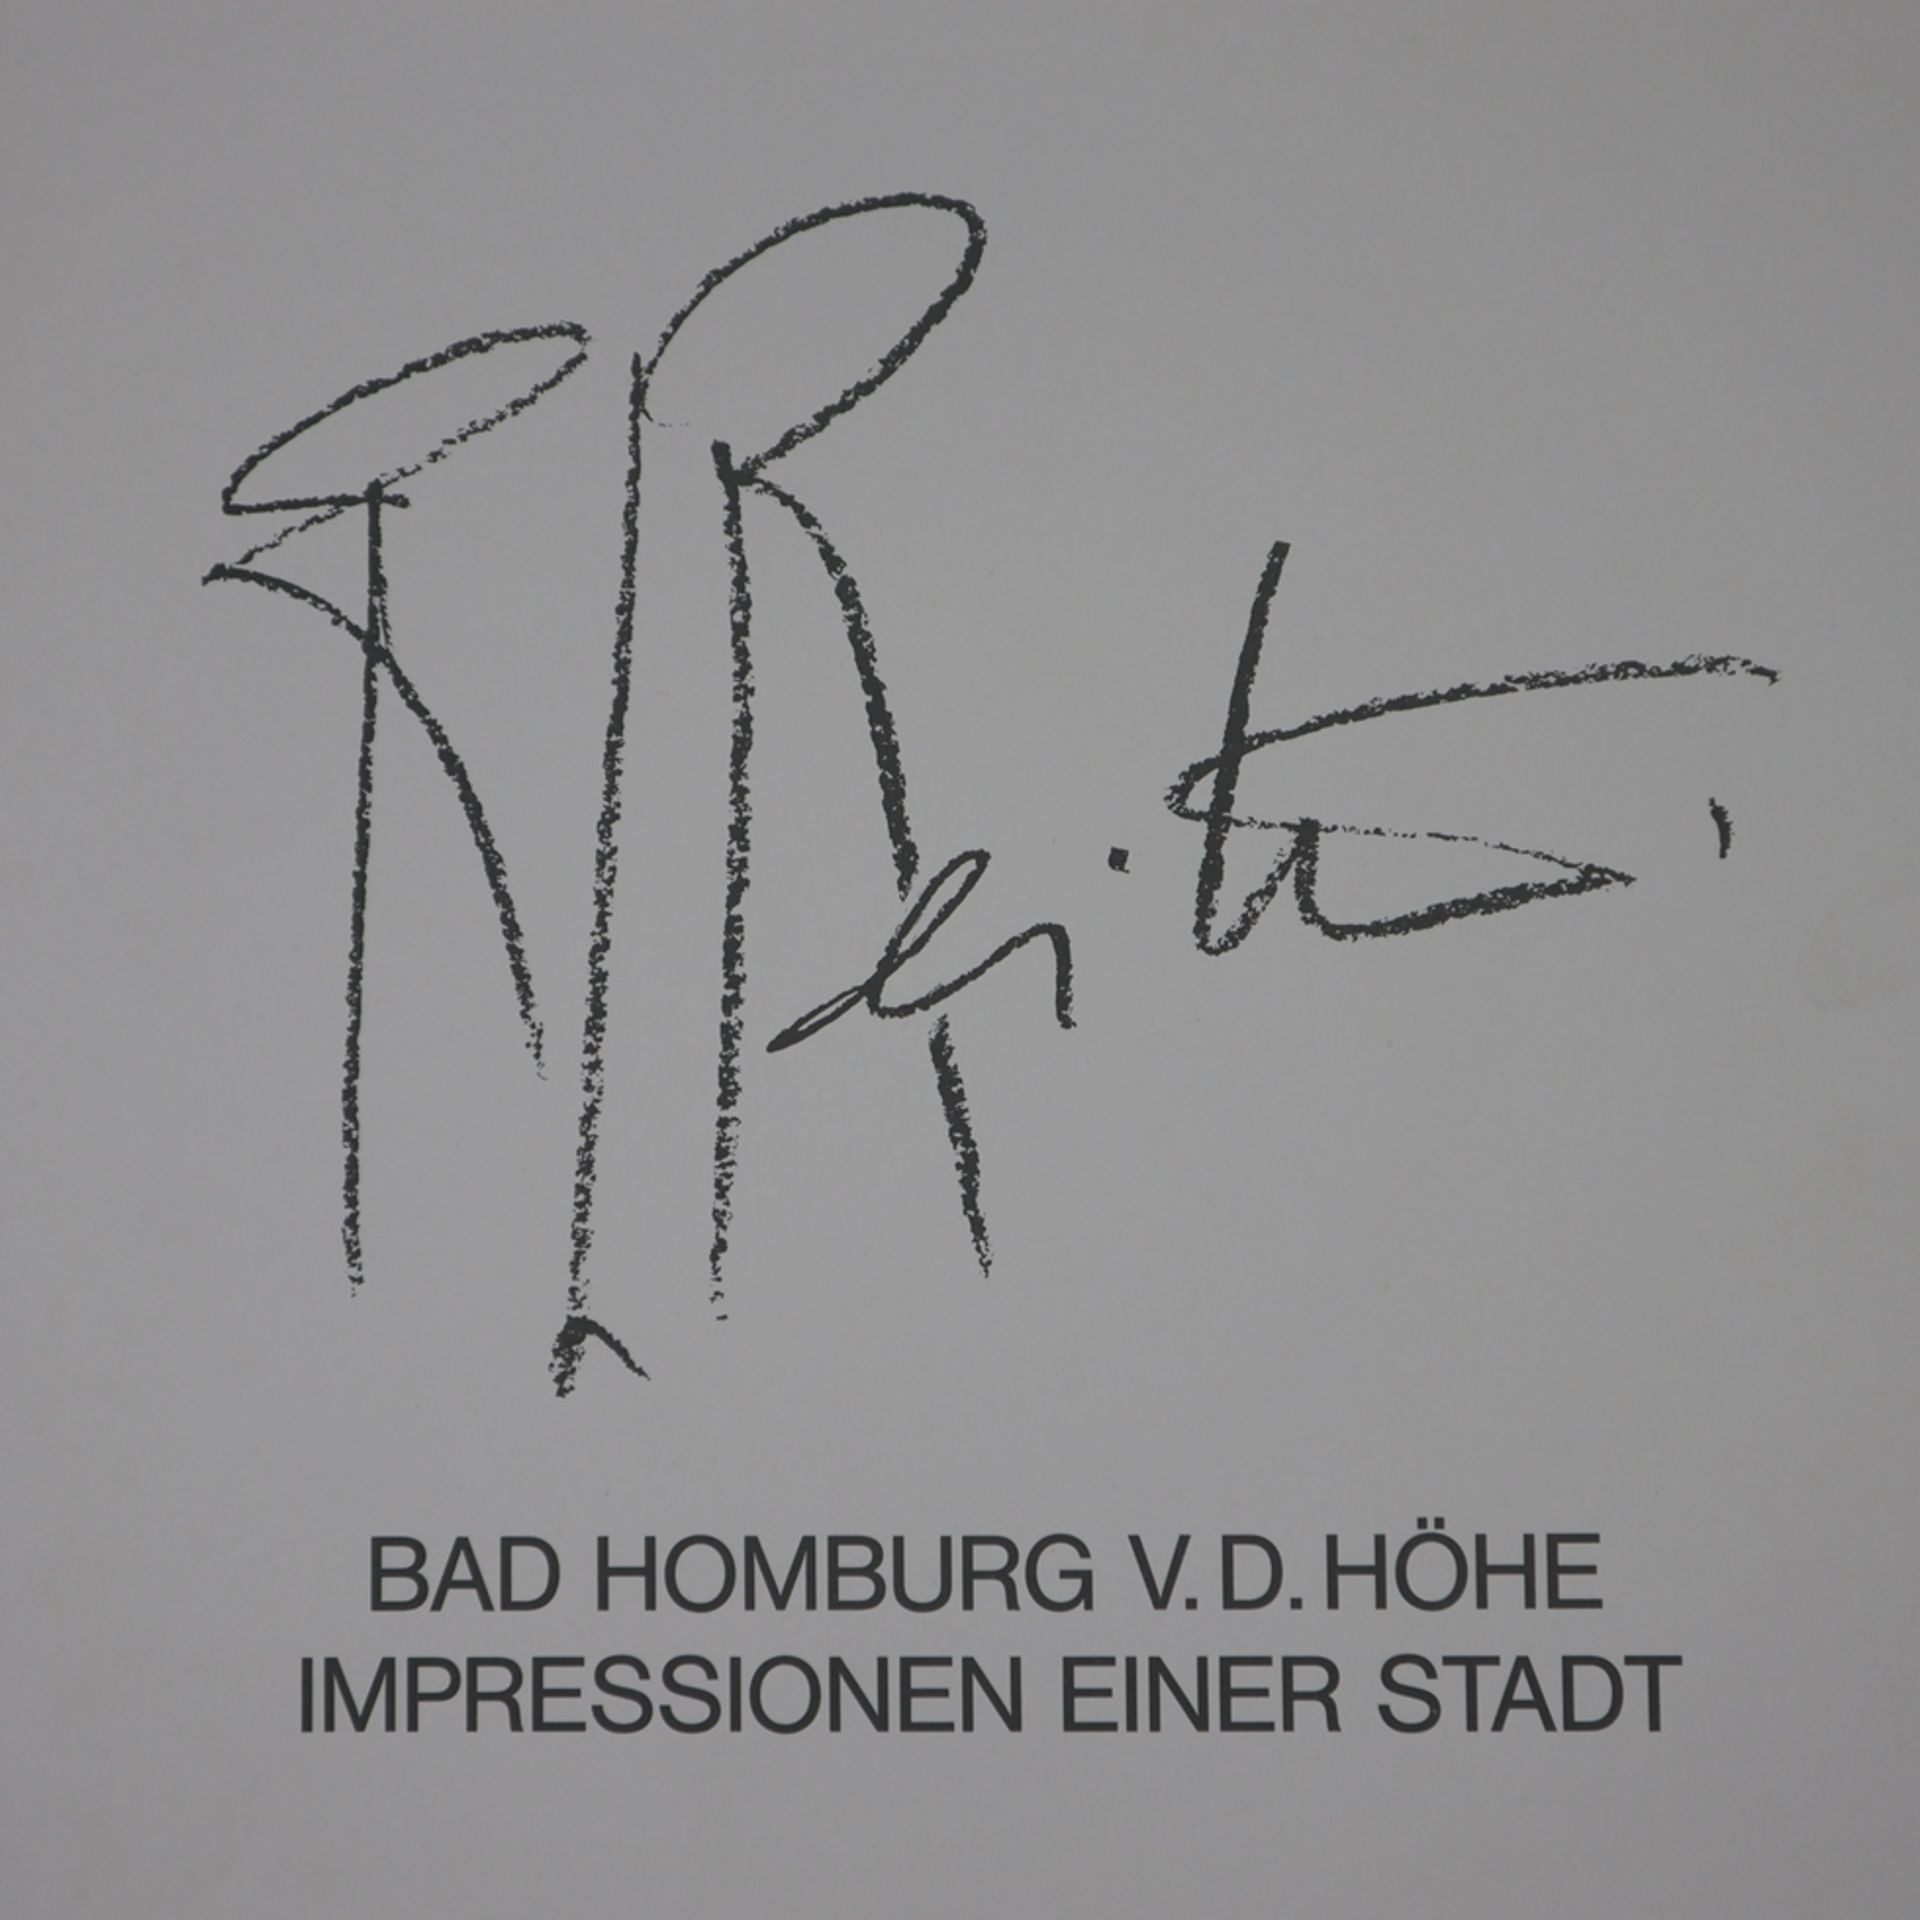 Reiter, Rudolf L. (*1944 Erding-2019 Wartenberg) - Fünf Farblithografien aus der Serie "Bad Homburg